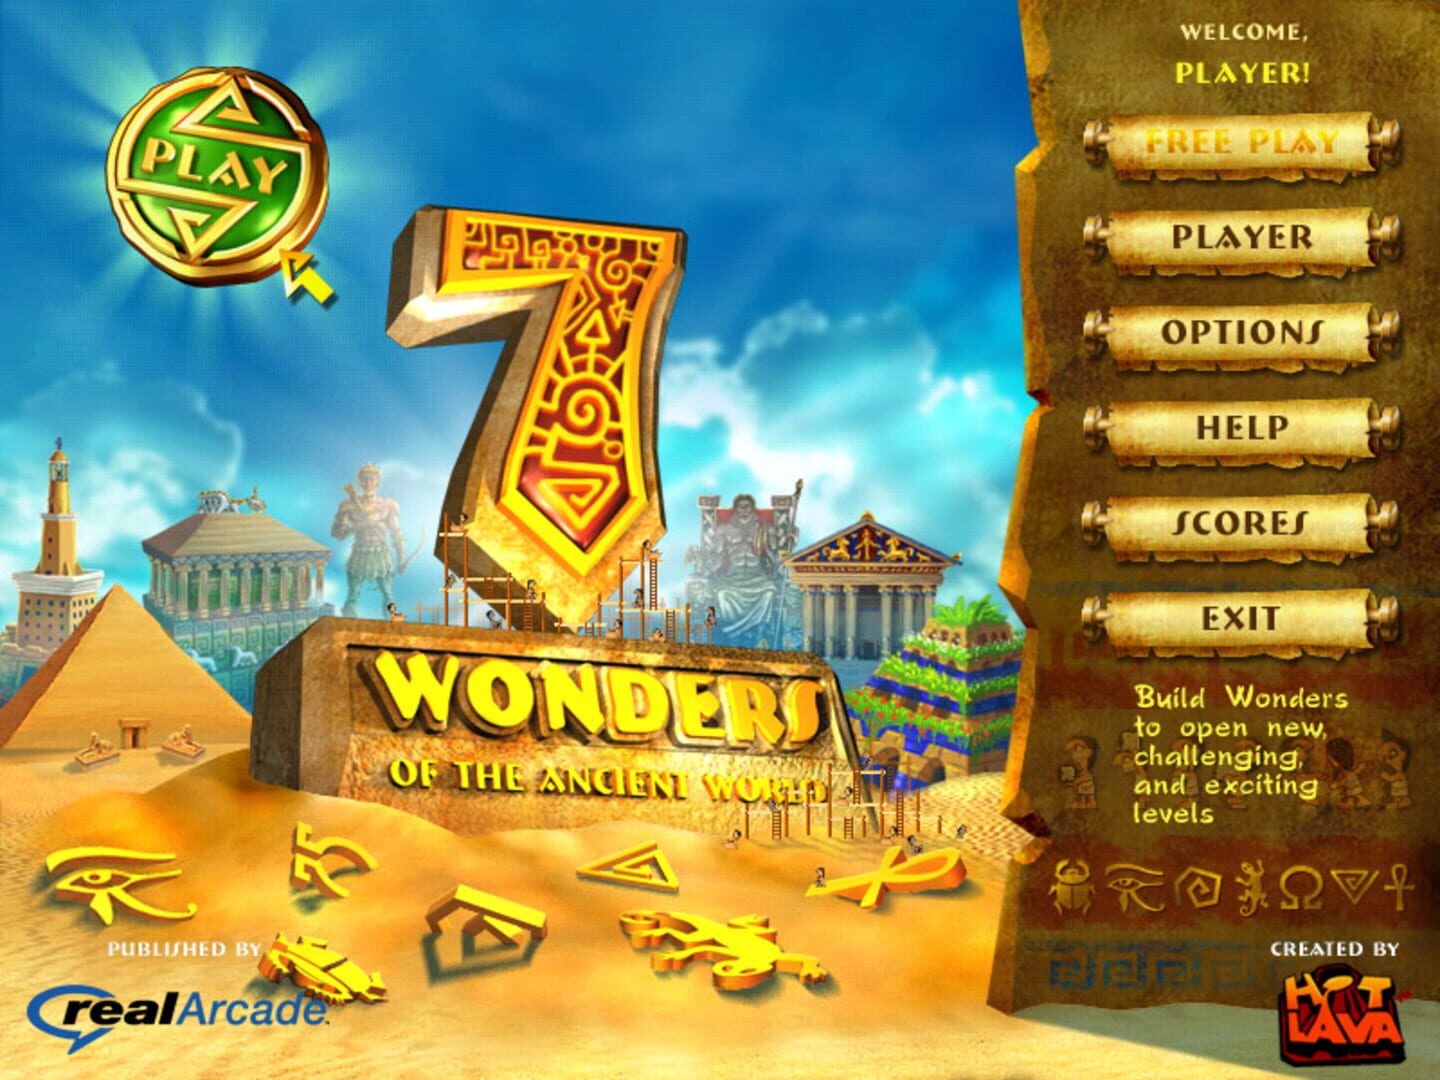 Название древних игр. 7 Wonders игра. 7 Чудес света игра. Компьютерная игра семь чудес света.